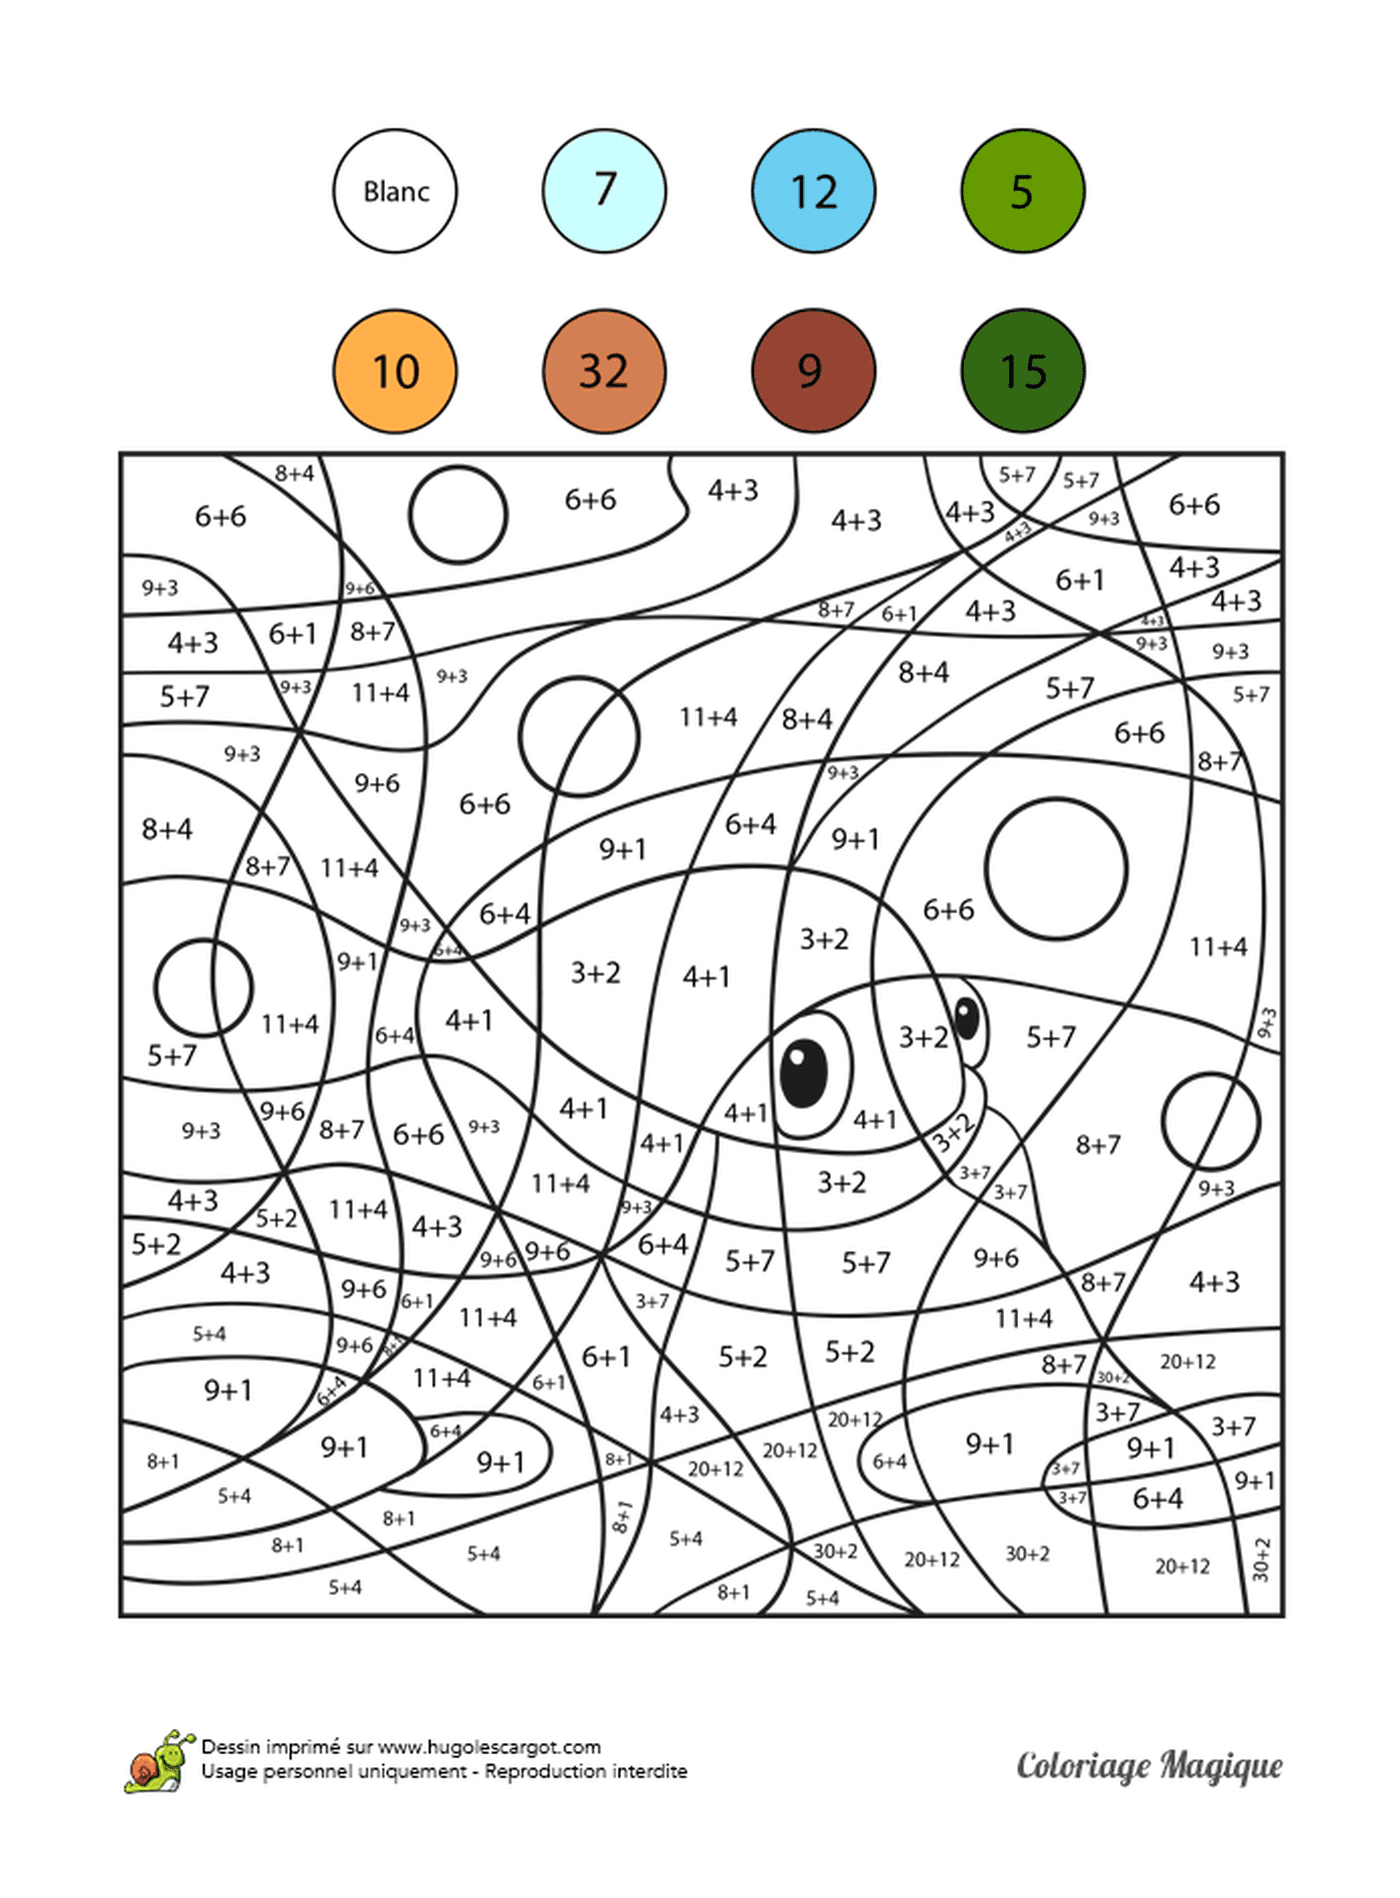  संख्या द्वारा रंगों को रंग देने के लिए पेज पर एक उल्लू 